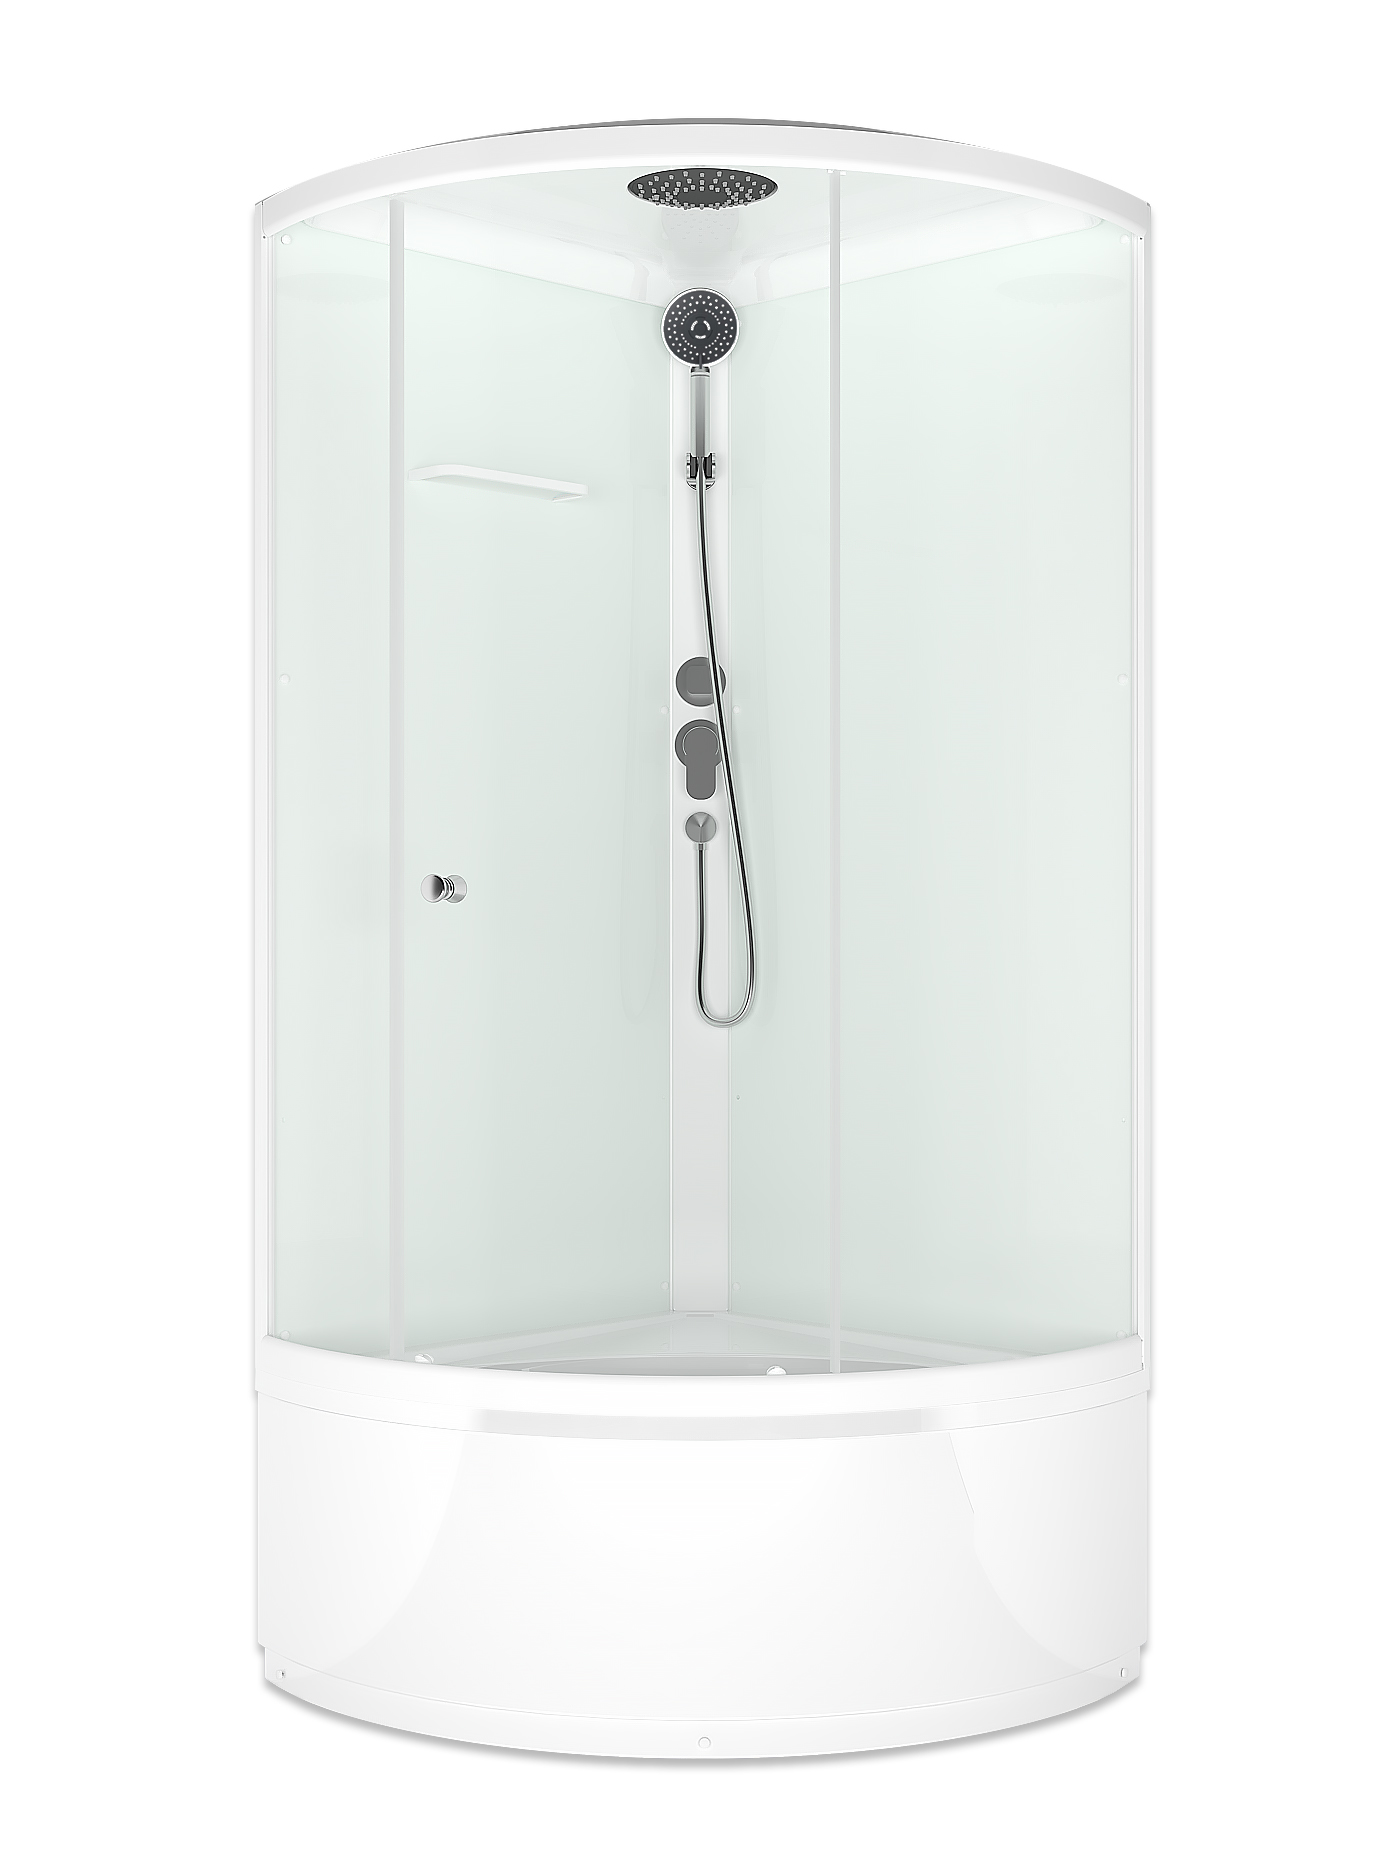 Domani-Spa-V1.2 Simple 99high Д/К 900*900*2180,белые стенки, сатин матированные стекла, без электрики, высокий поддон, с крышей